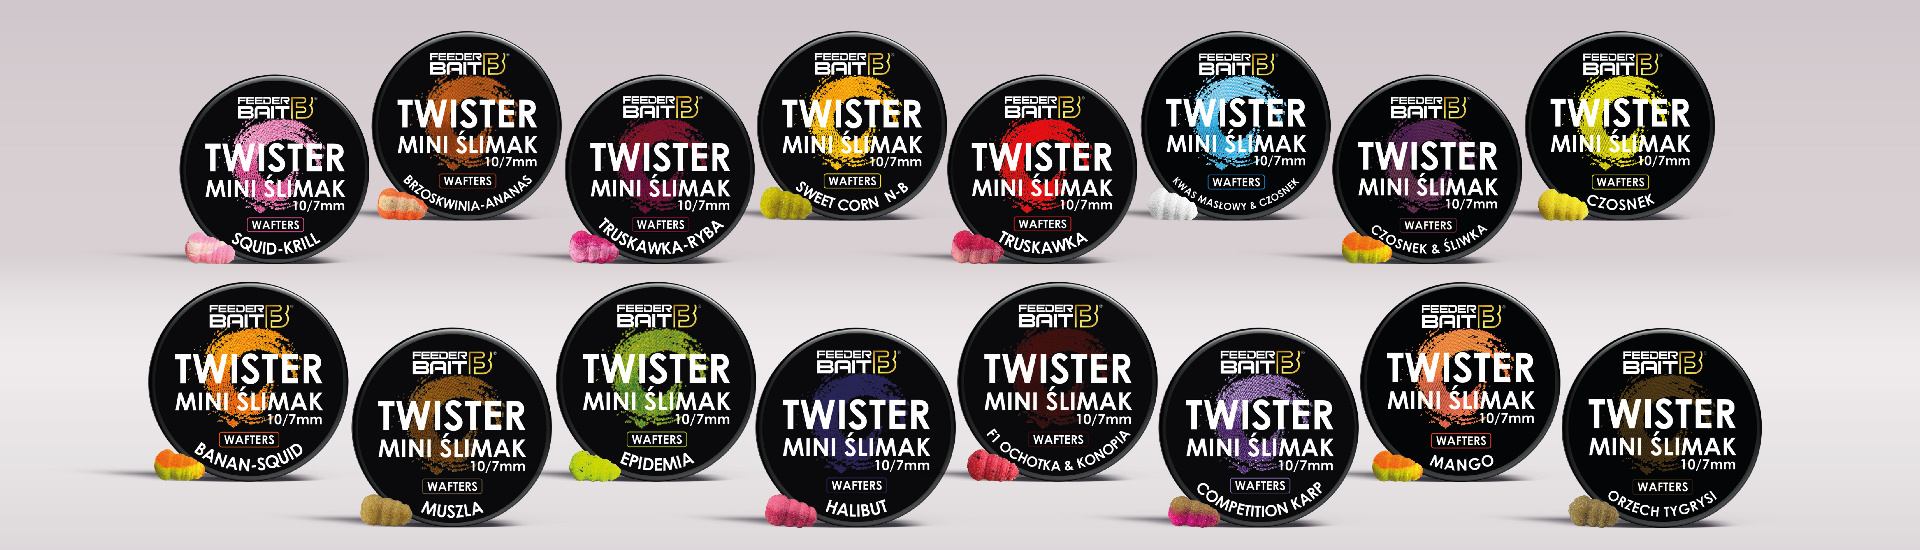 banner-mini-slimak-twister-1920x550-1